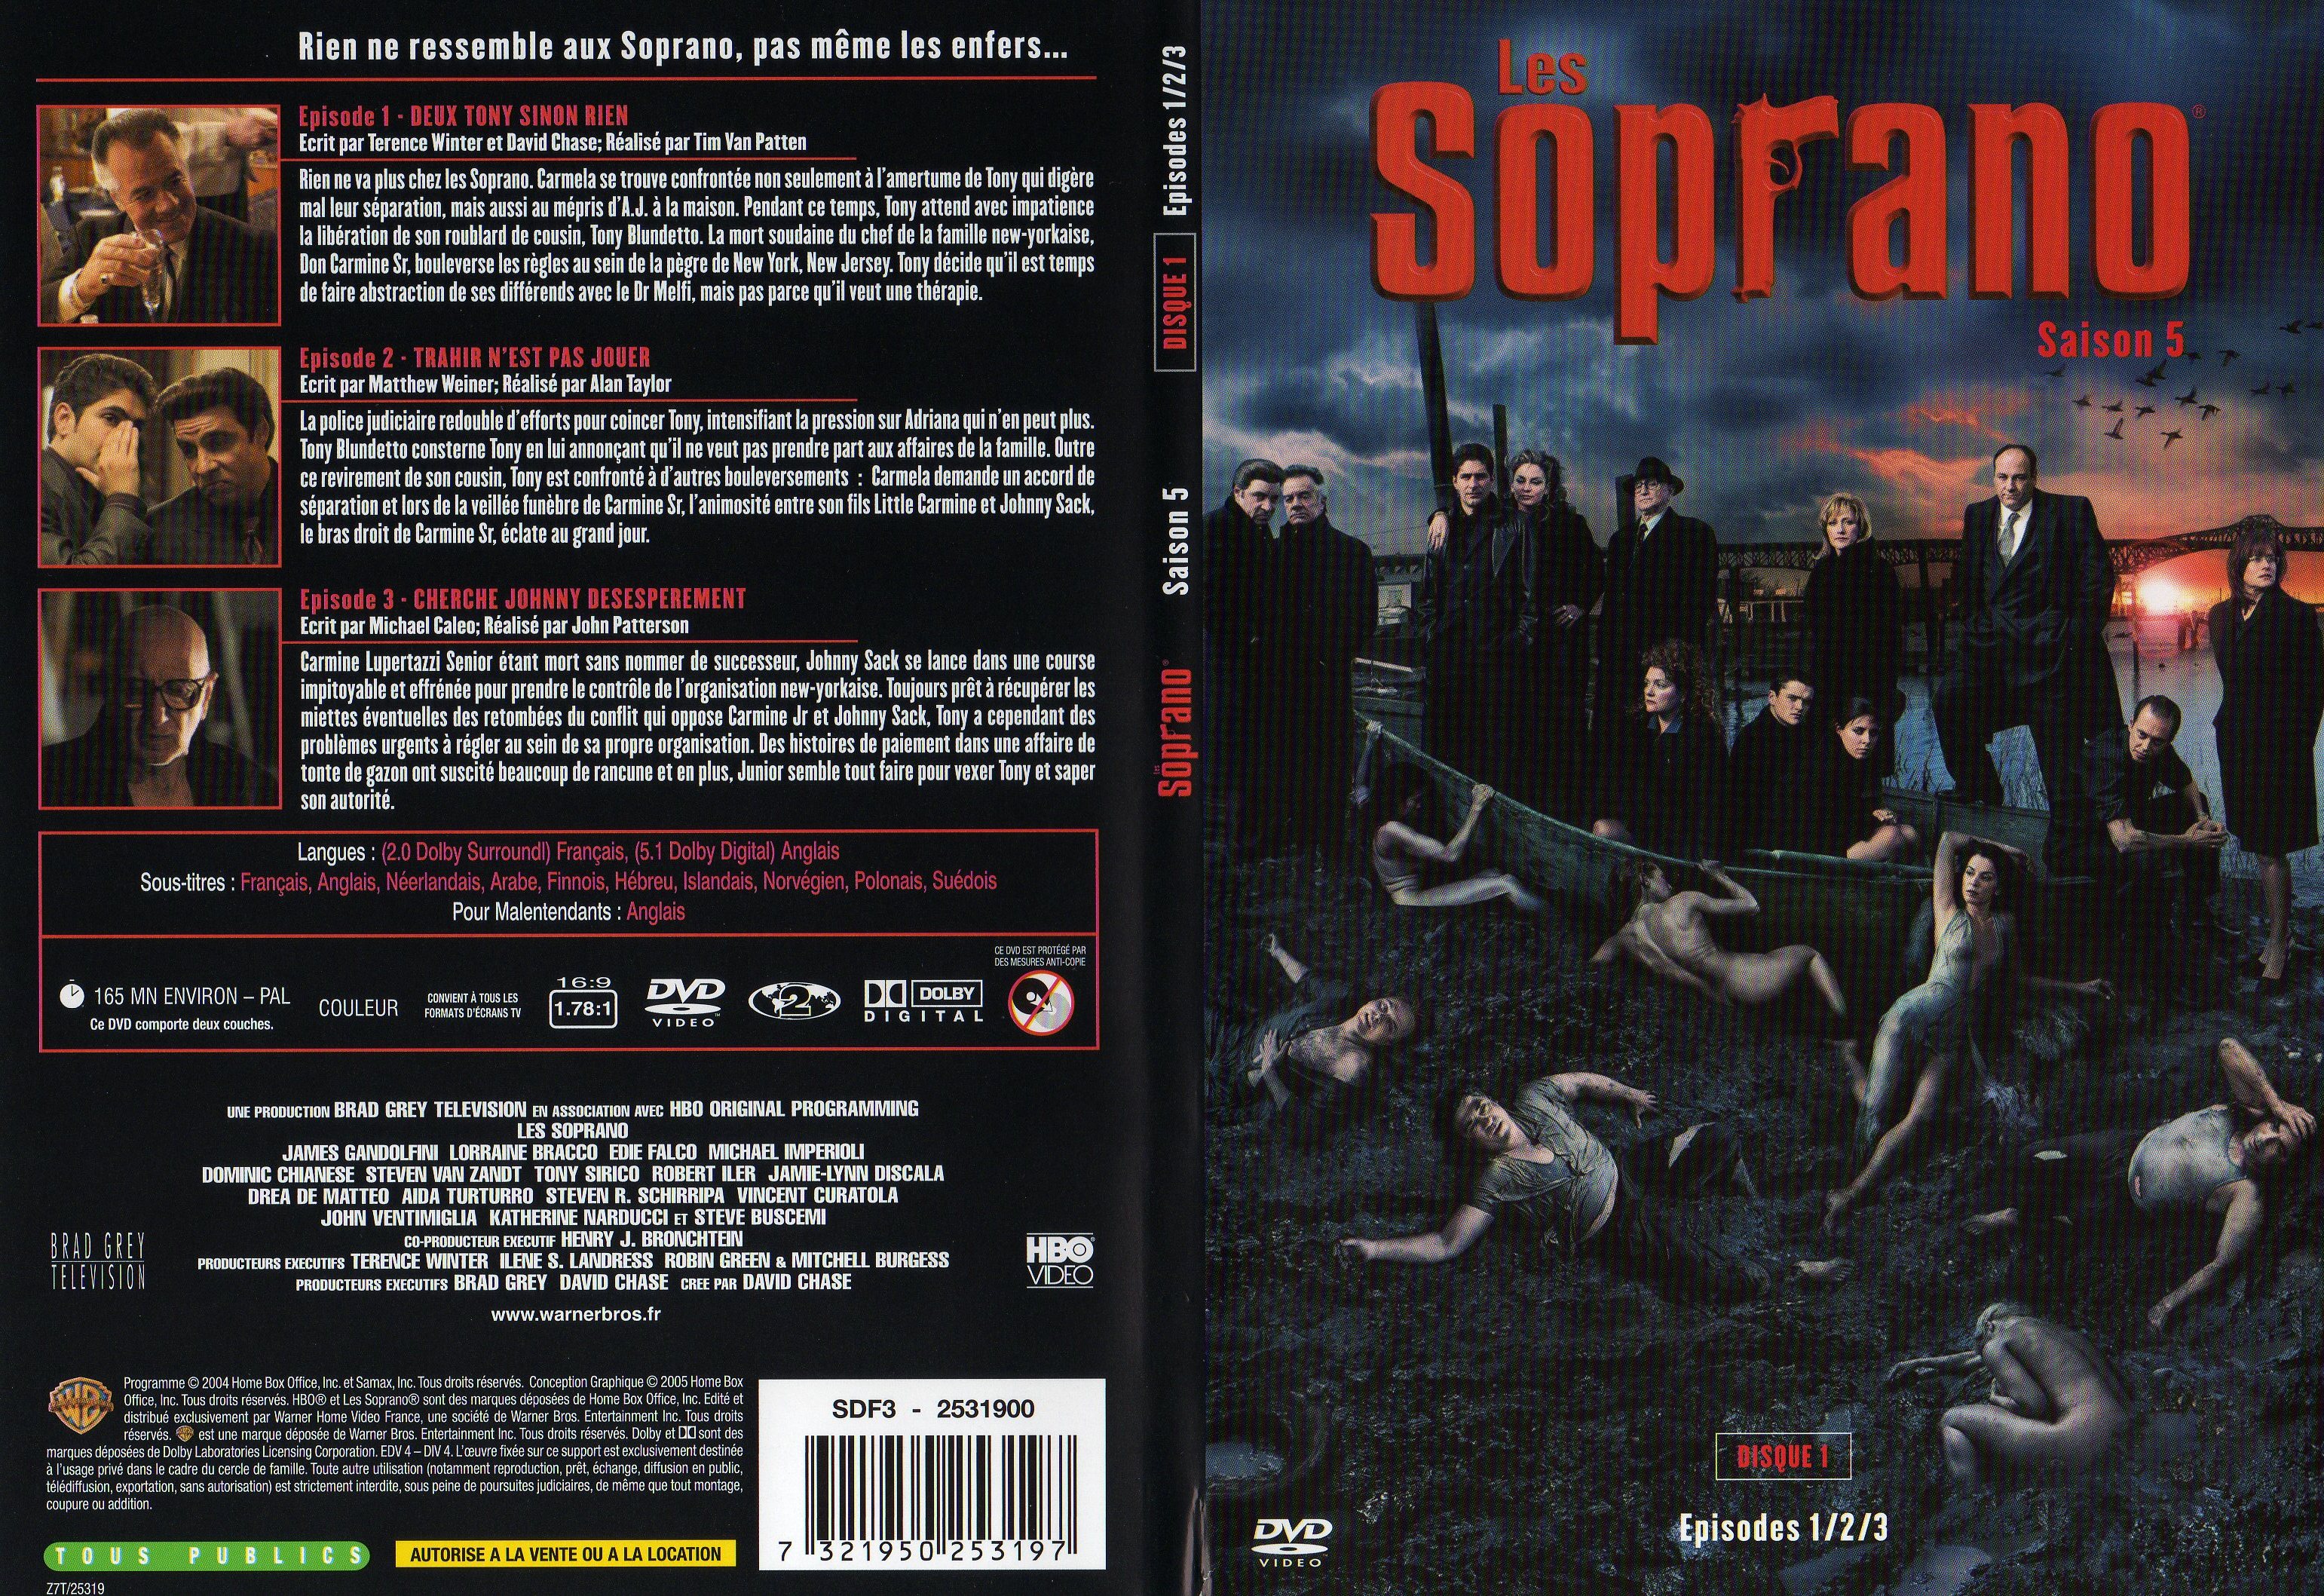 Jaquette DVD Les Soprano saison 5 DVD 1